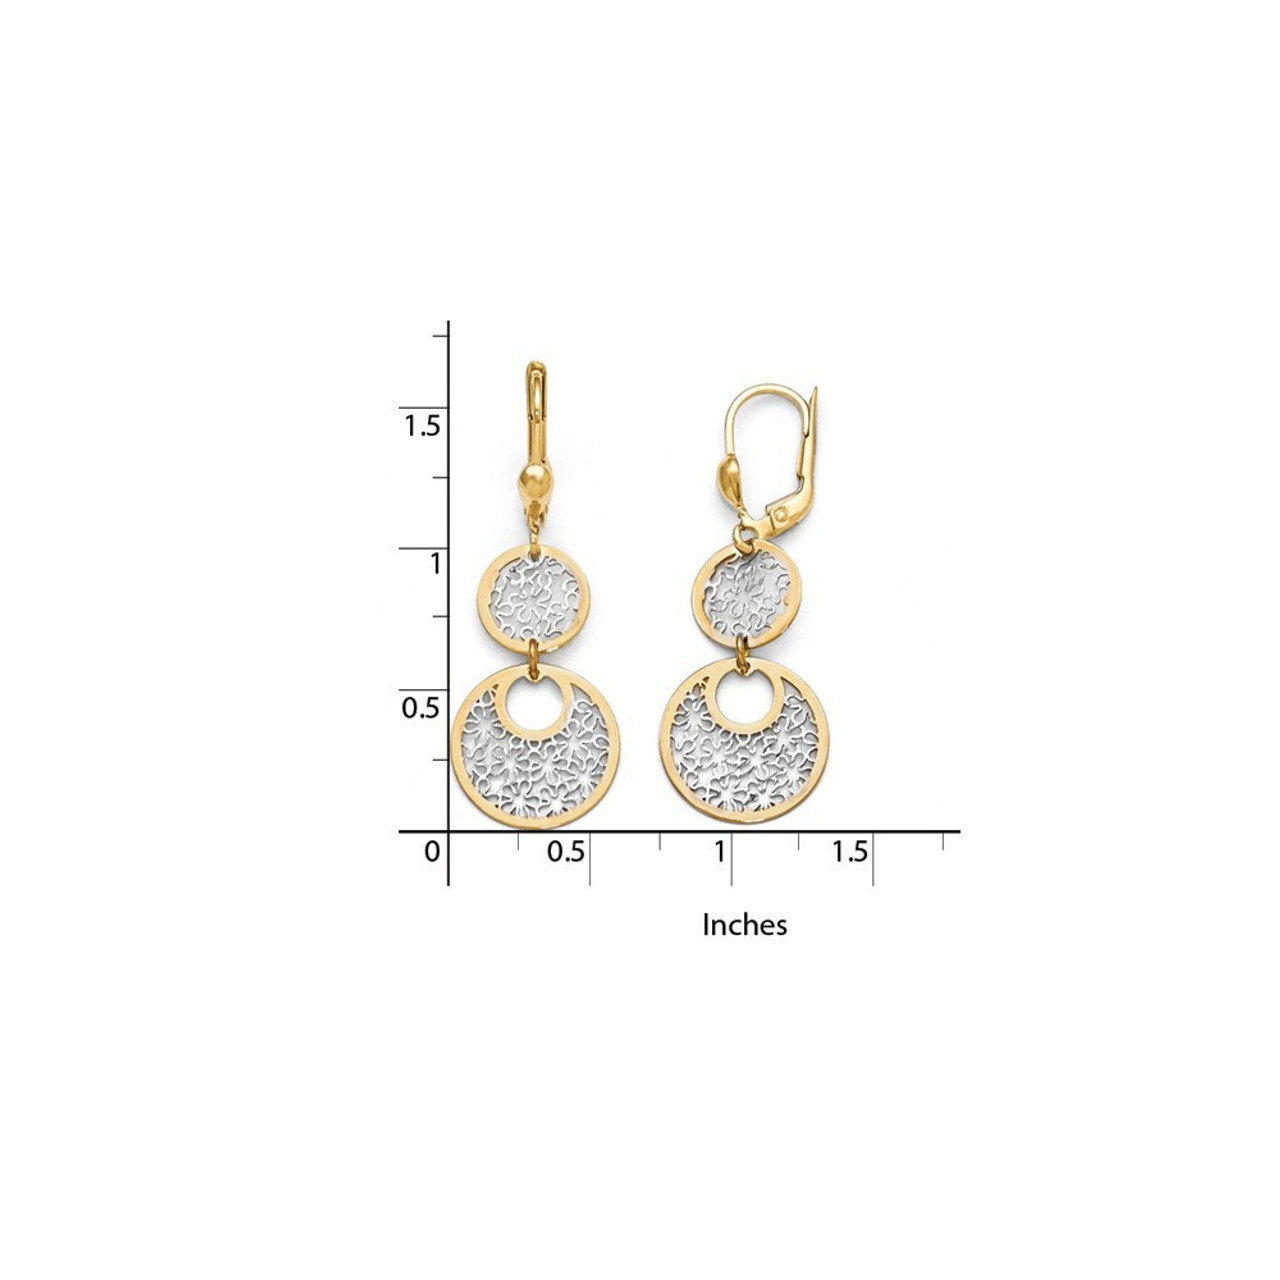 Women's Gold Diamond Stud Earrings Labgrown 14K White Gold 14 Rose Gold 14K Yellow Gold Post Earring Pair Threader Earrings 14K White Gold / 1 ctw (